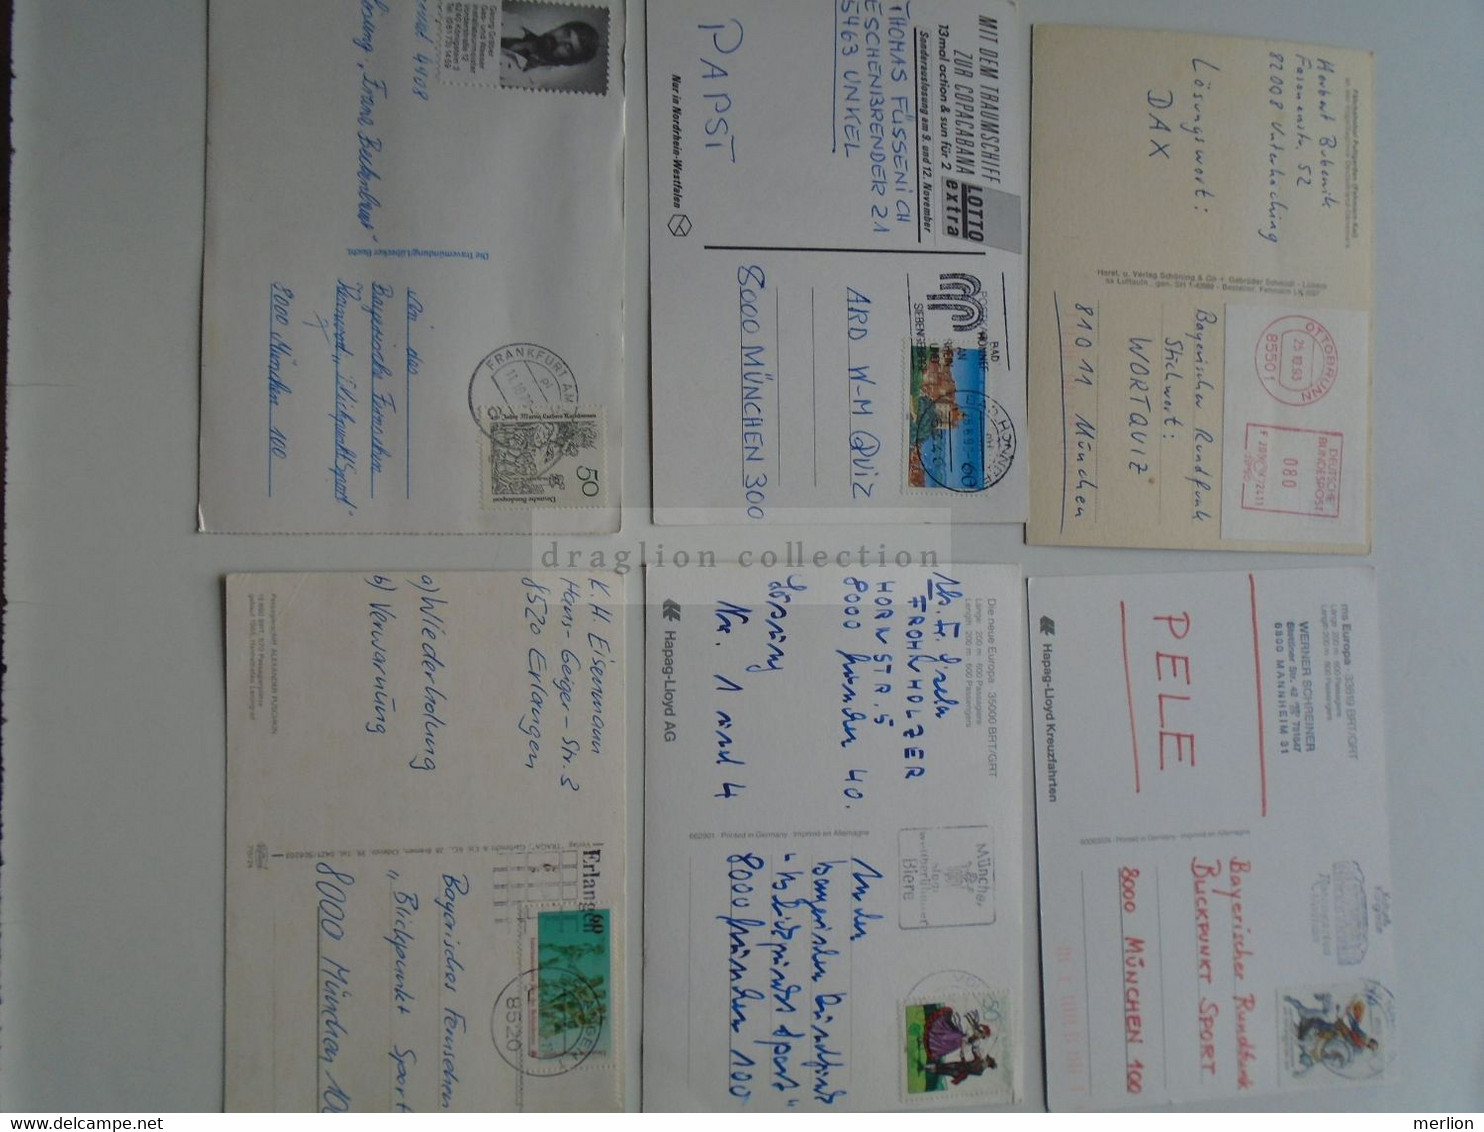 D175670  Lot of 6 postcards of Ships - MS Europa Deutschland - Alexander Pushkin  Leningrad,  TT-Line